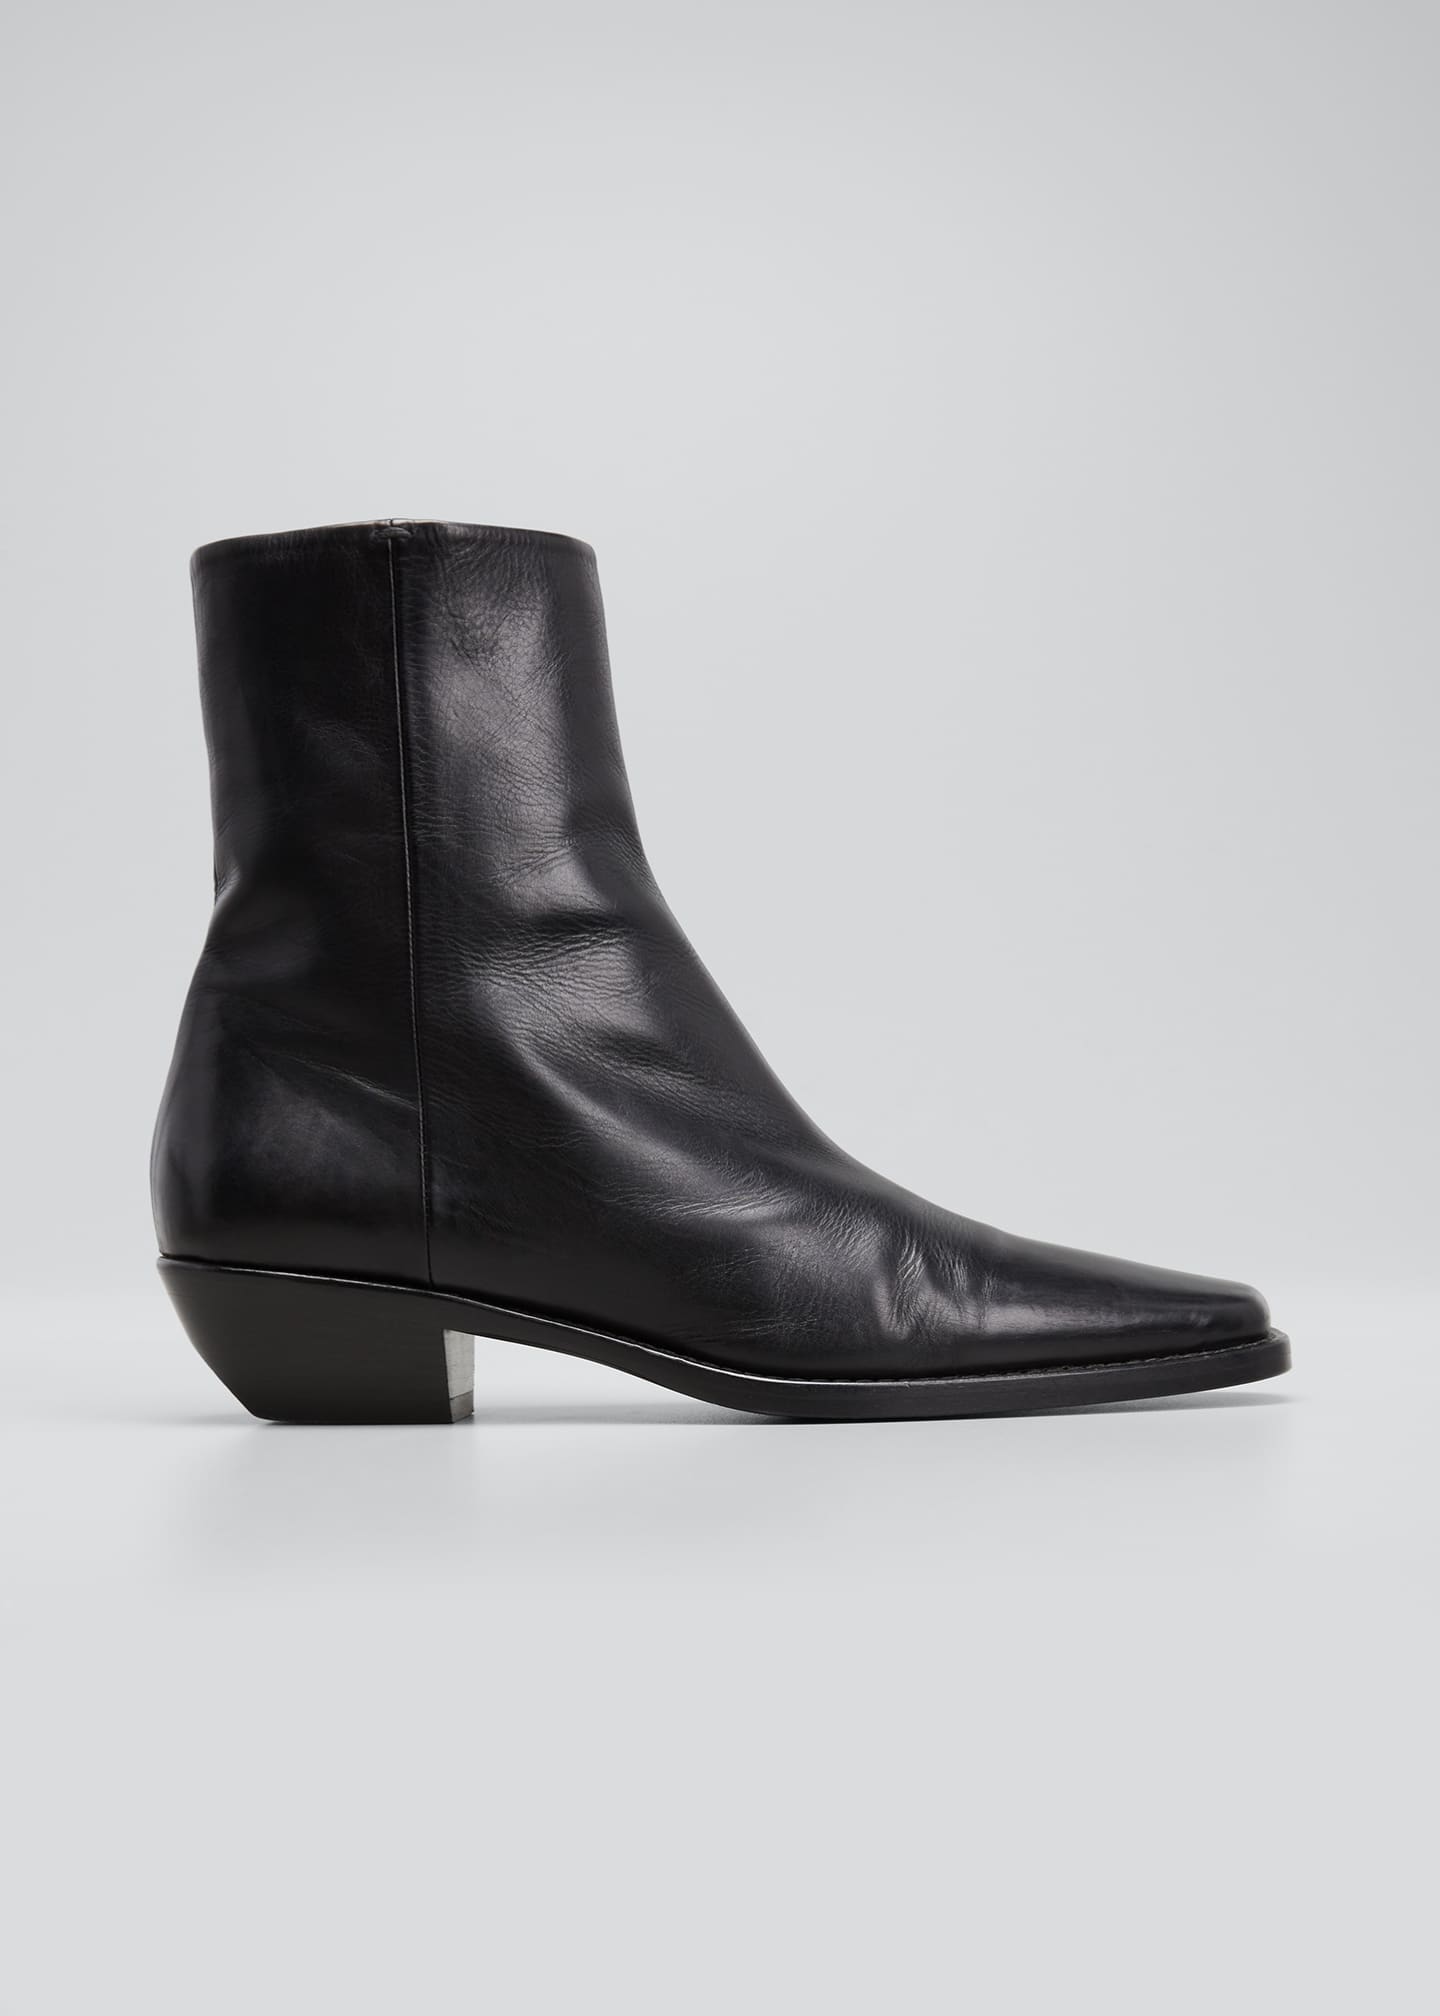 Khaite Wooster Calfskin Ankle Boots - Bergdorf Goodman